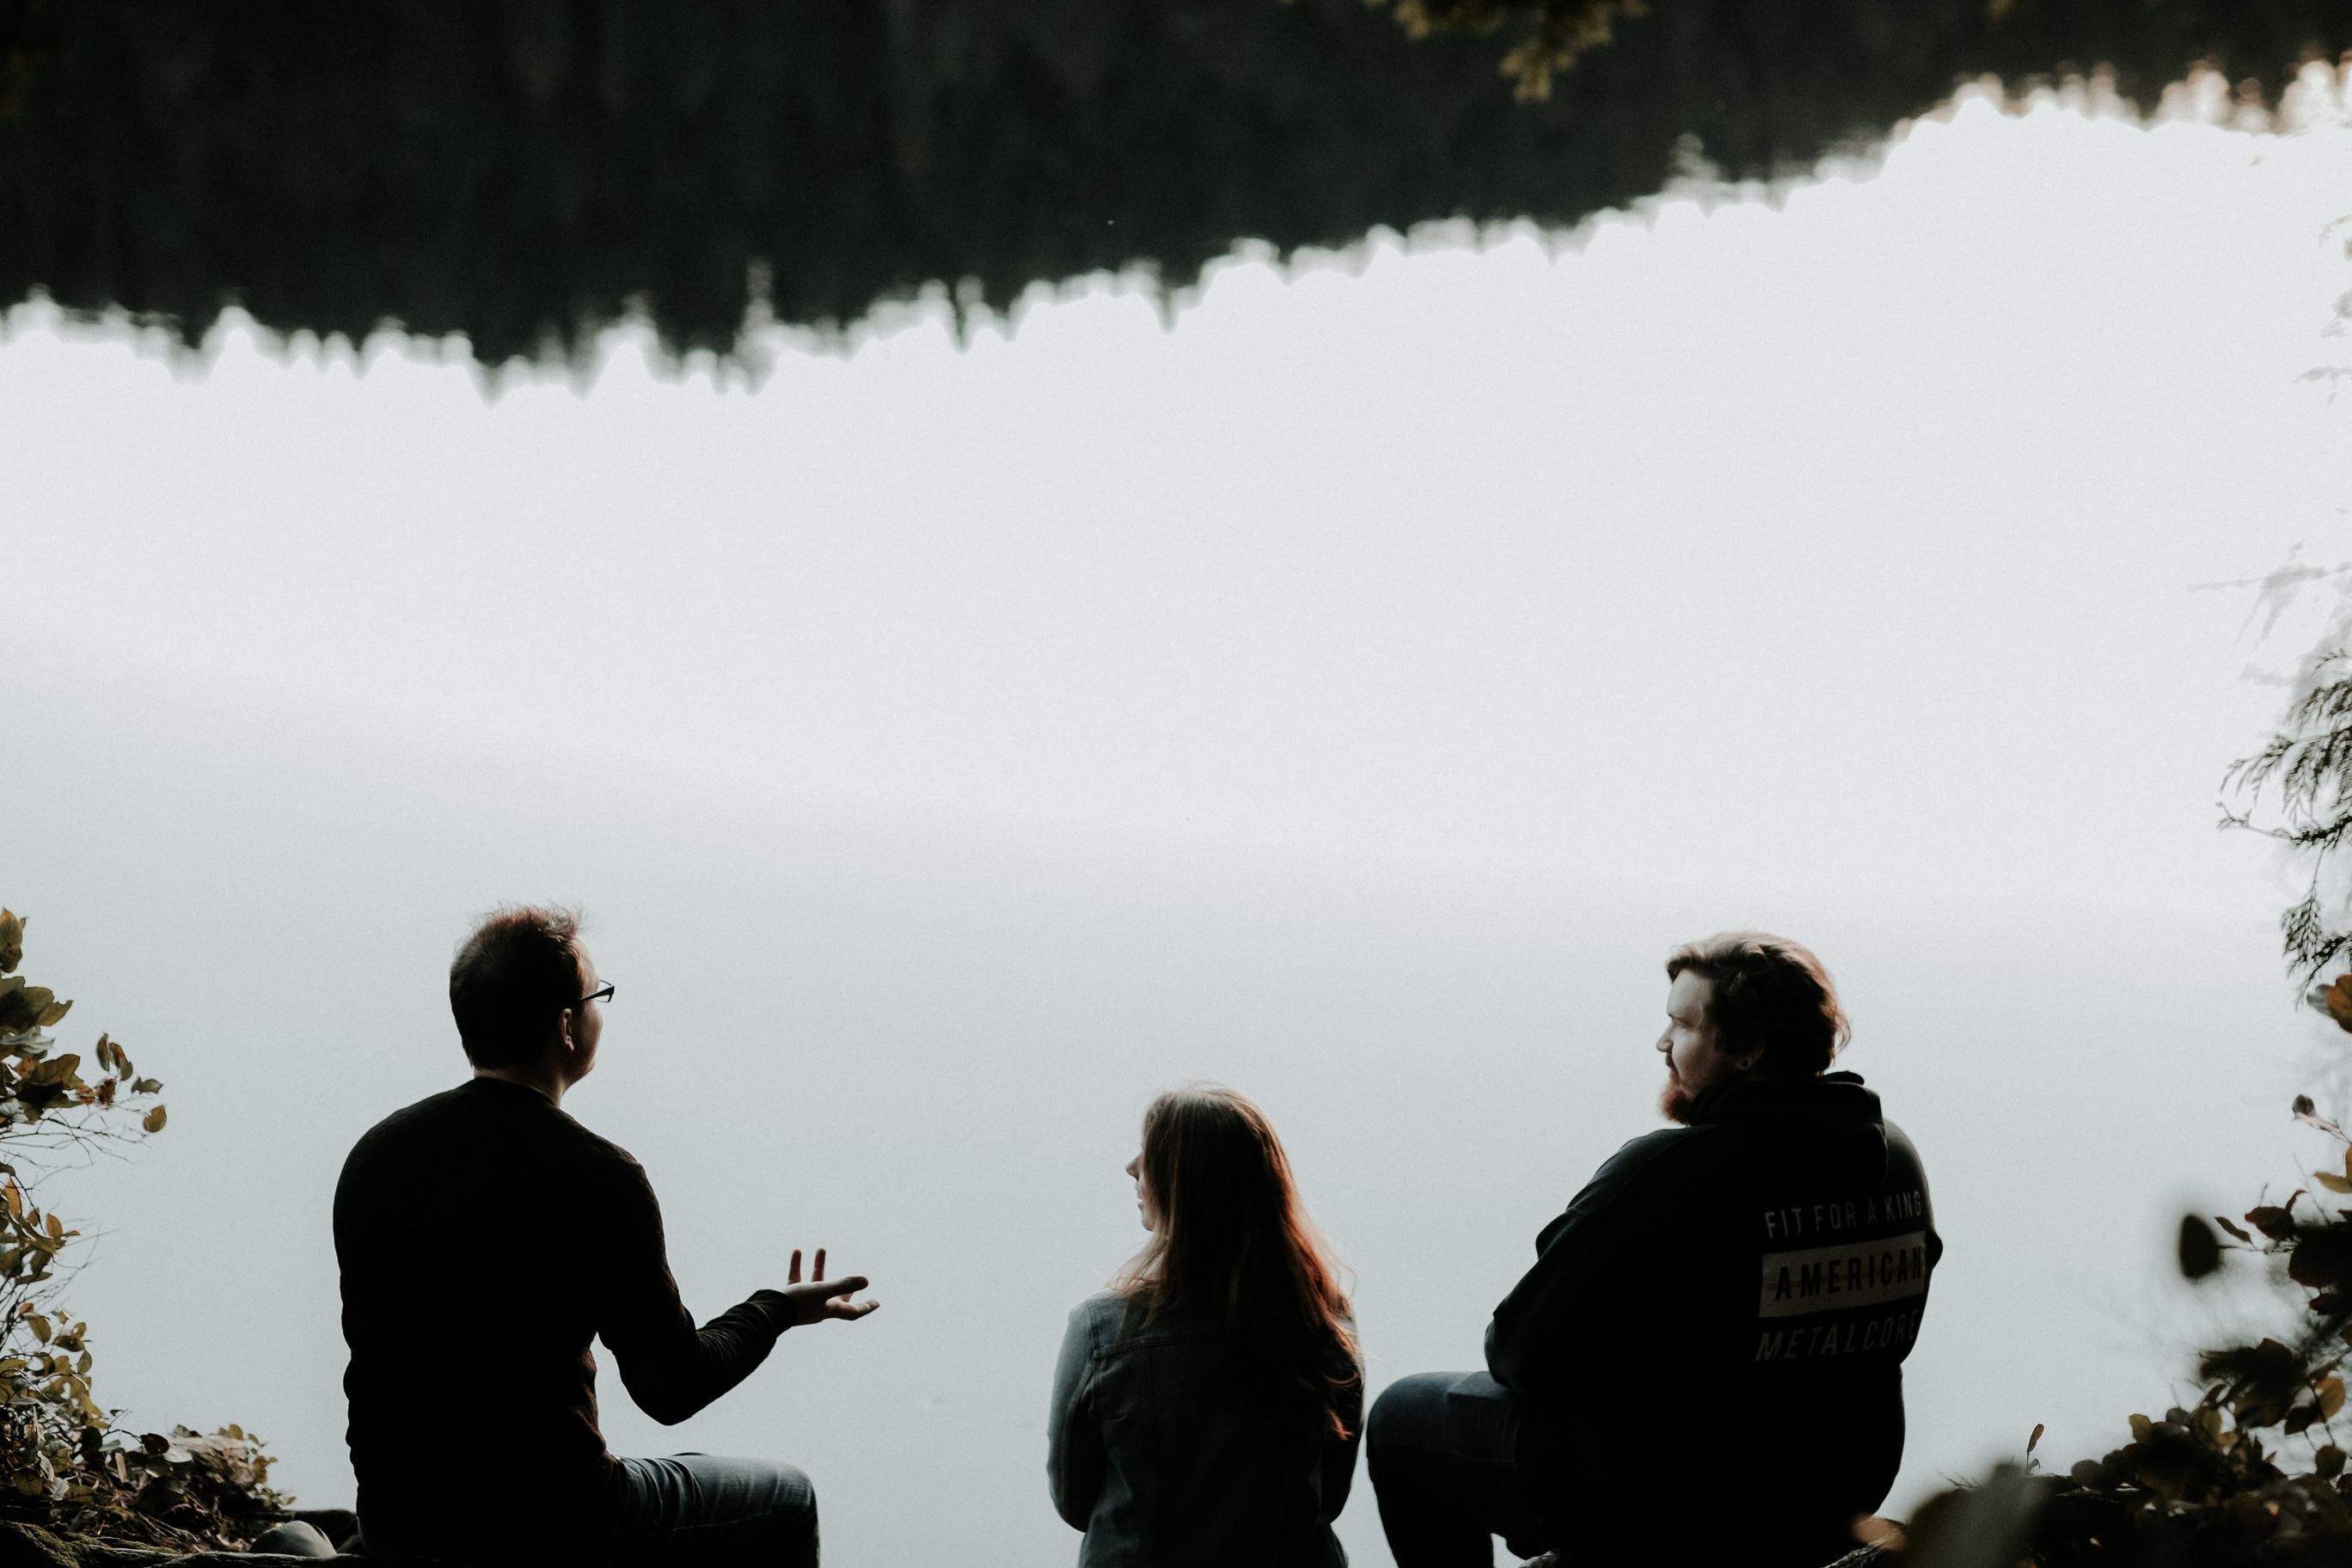 Tre personer snakker sammen. Vi ser dem bakfra og i bakgrunnen ser vi et vann som reflekterer det som virker å være en skog.